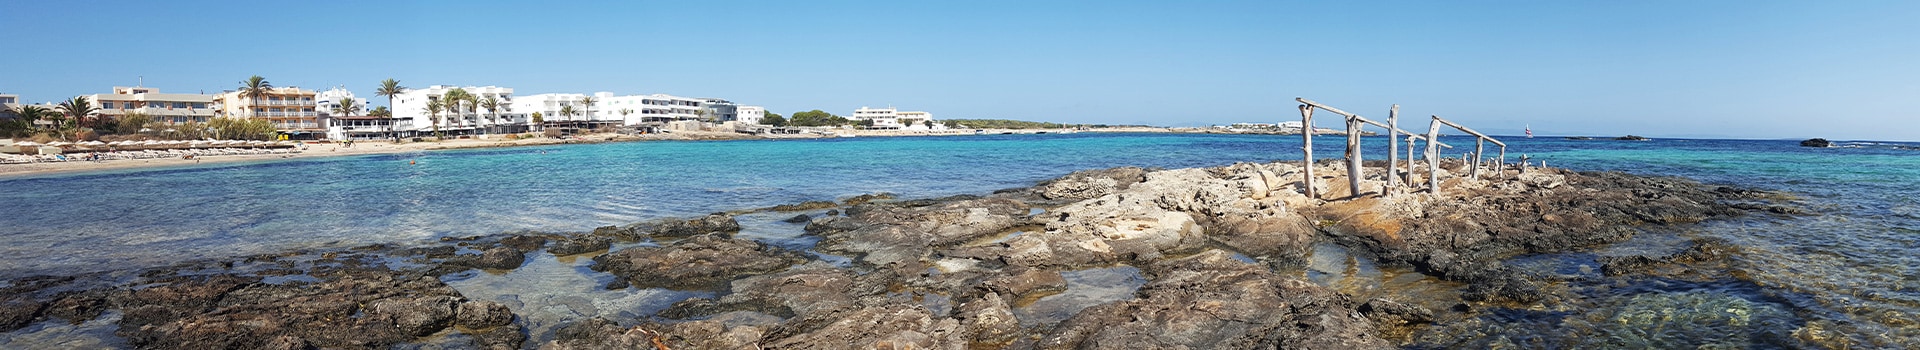 Billetes de Barco de Dénia a Formentera